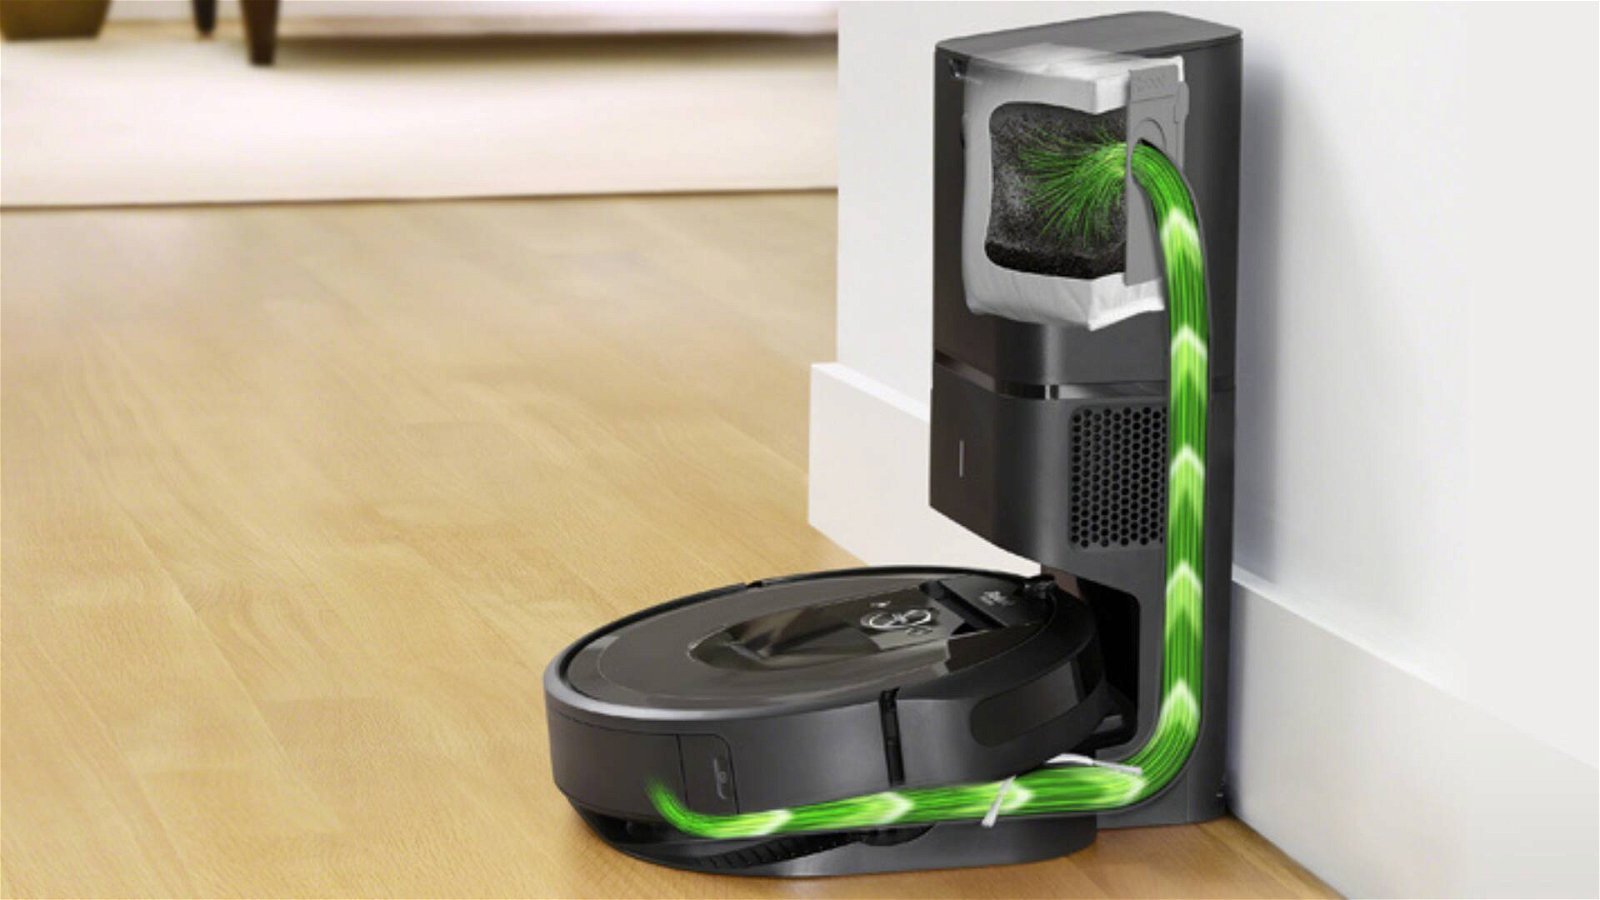 Immagine di Offerte del giorno Amazon: tornano le offerte sui robot aspirapolvere Roomba!